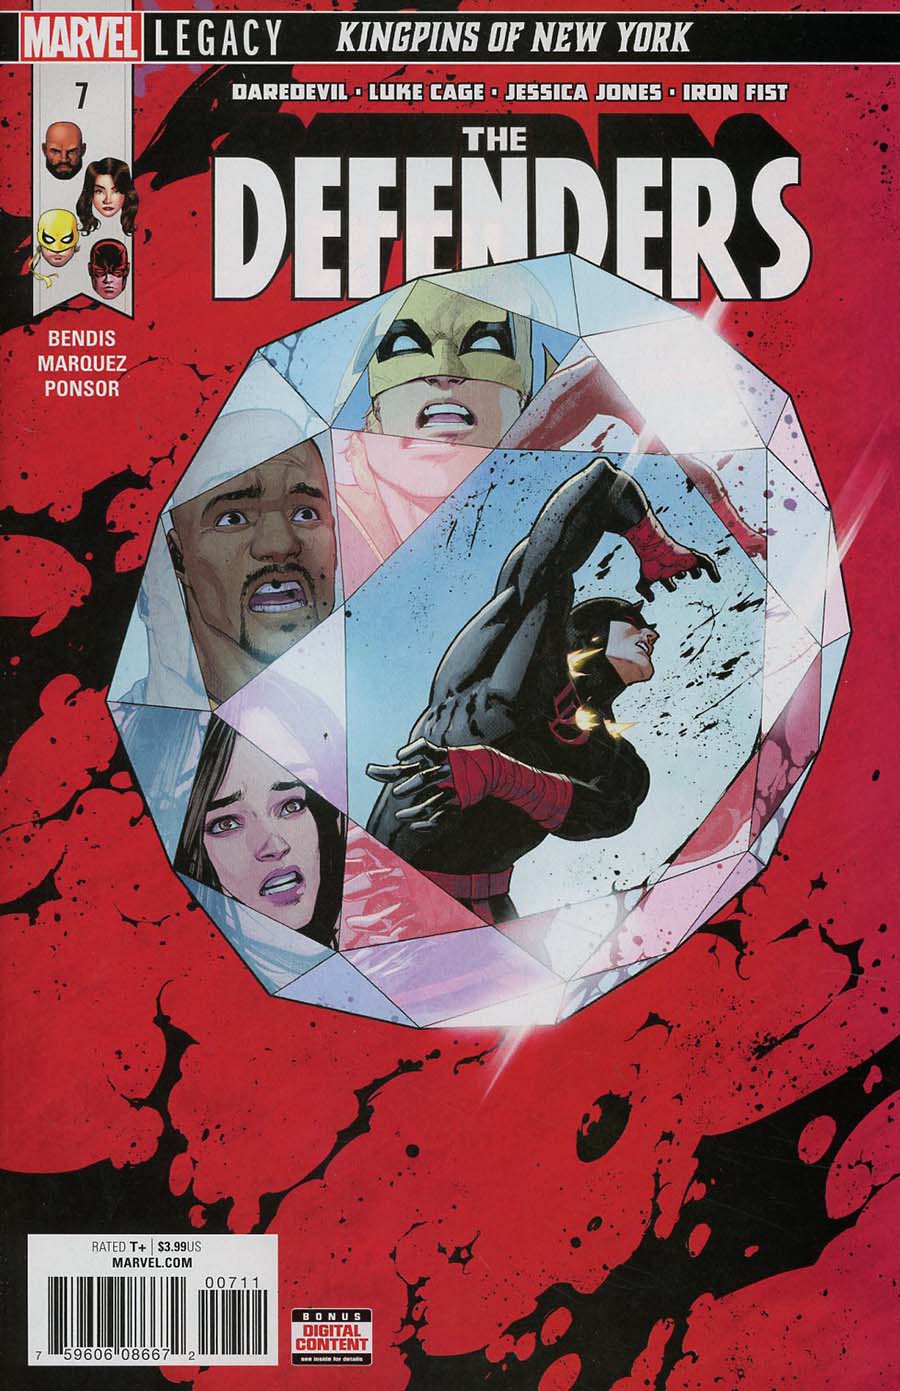 Defenders Vol 5 #7 (Marvel Legacy Tie-In)